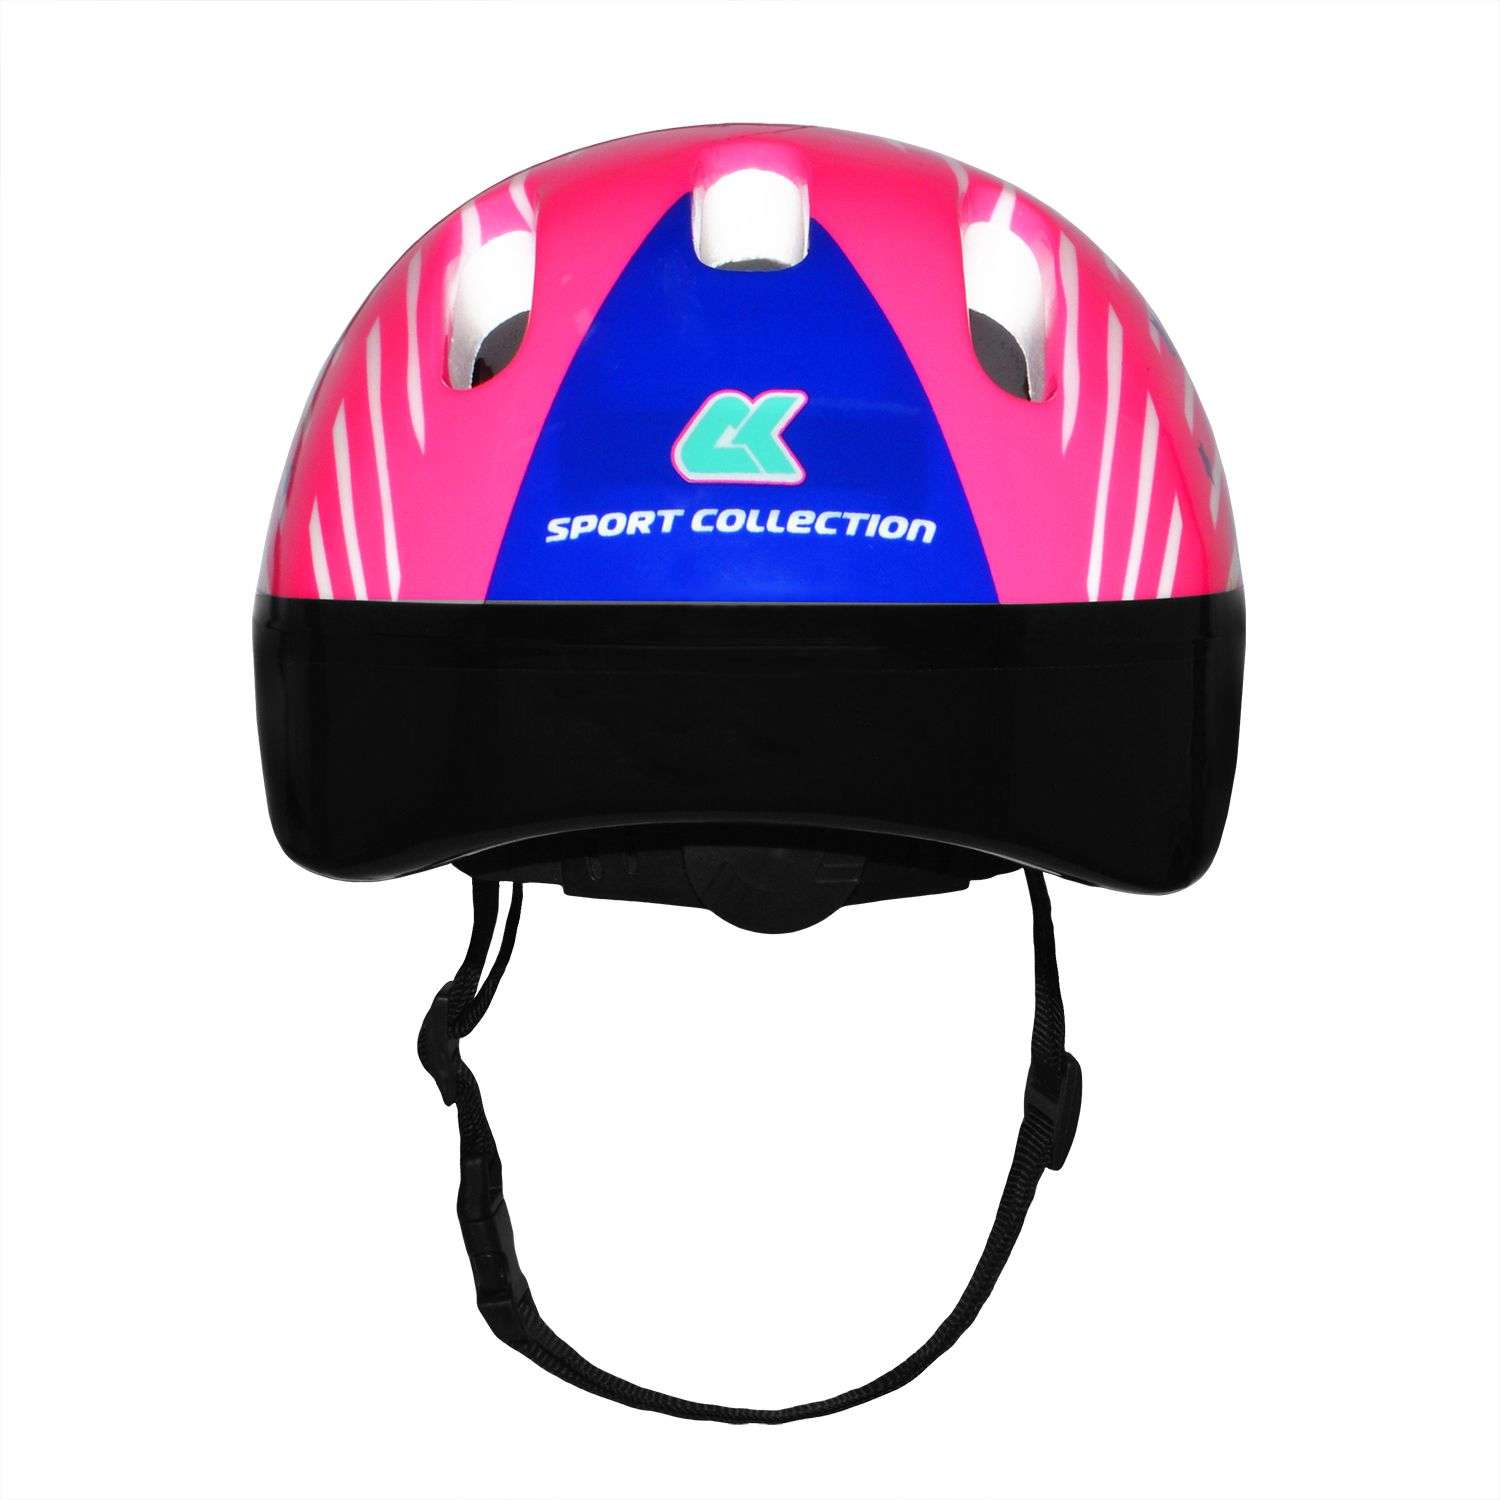 Роликовый комплект Sport Collection в сумке SET JOYFULL Violet ролики р. 33-36 Шлем 50-56 Защита S/M - фото 5